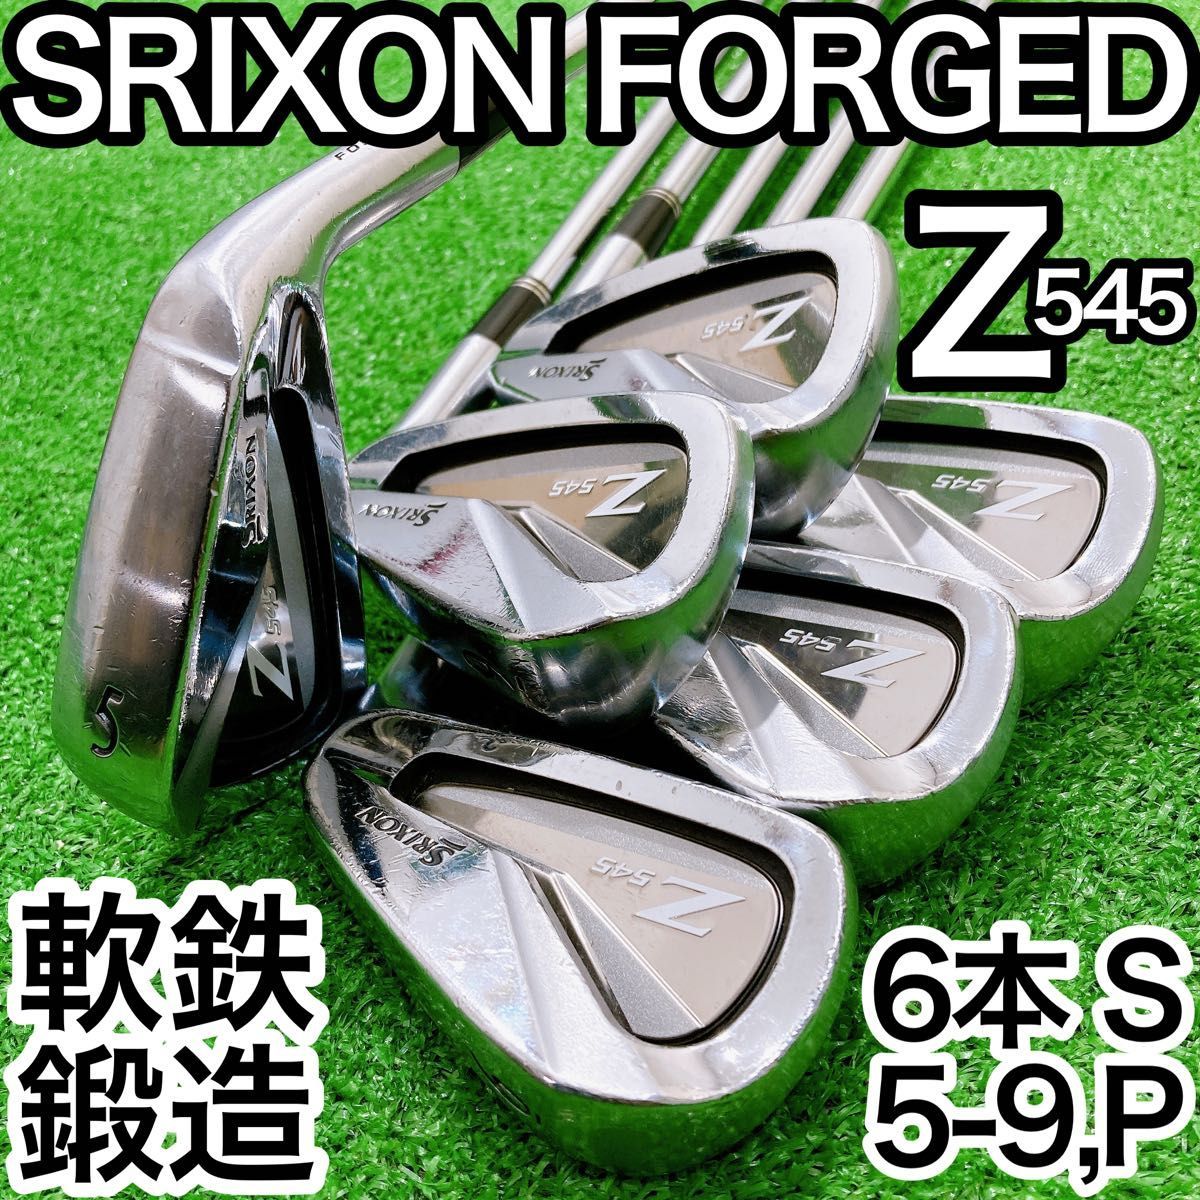 SRIXON Z545アイアンNS-PRO980GHスチール(S)6本セット - クラブ